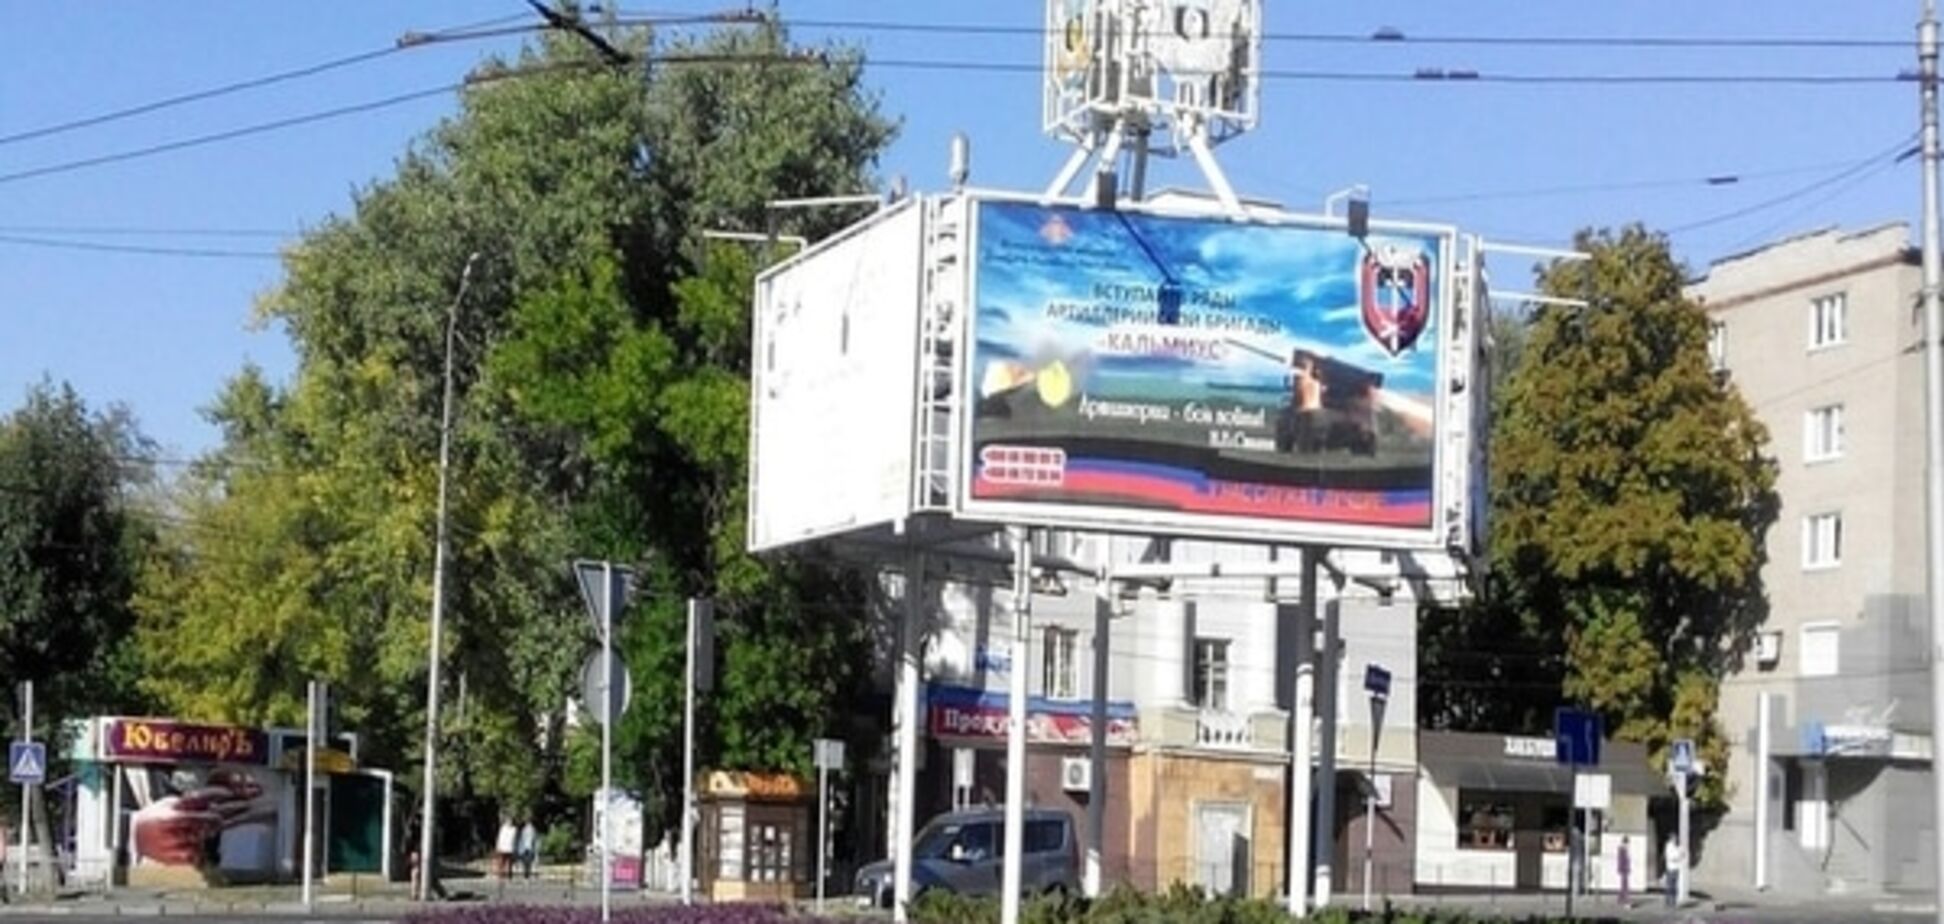 Терористи на плакатах і порожнеча на вулицях: опубліковані нові фото 'столиці ДНР'